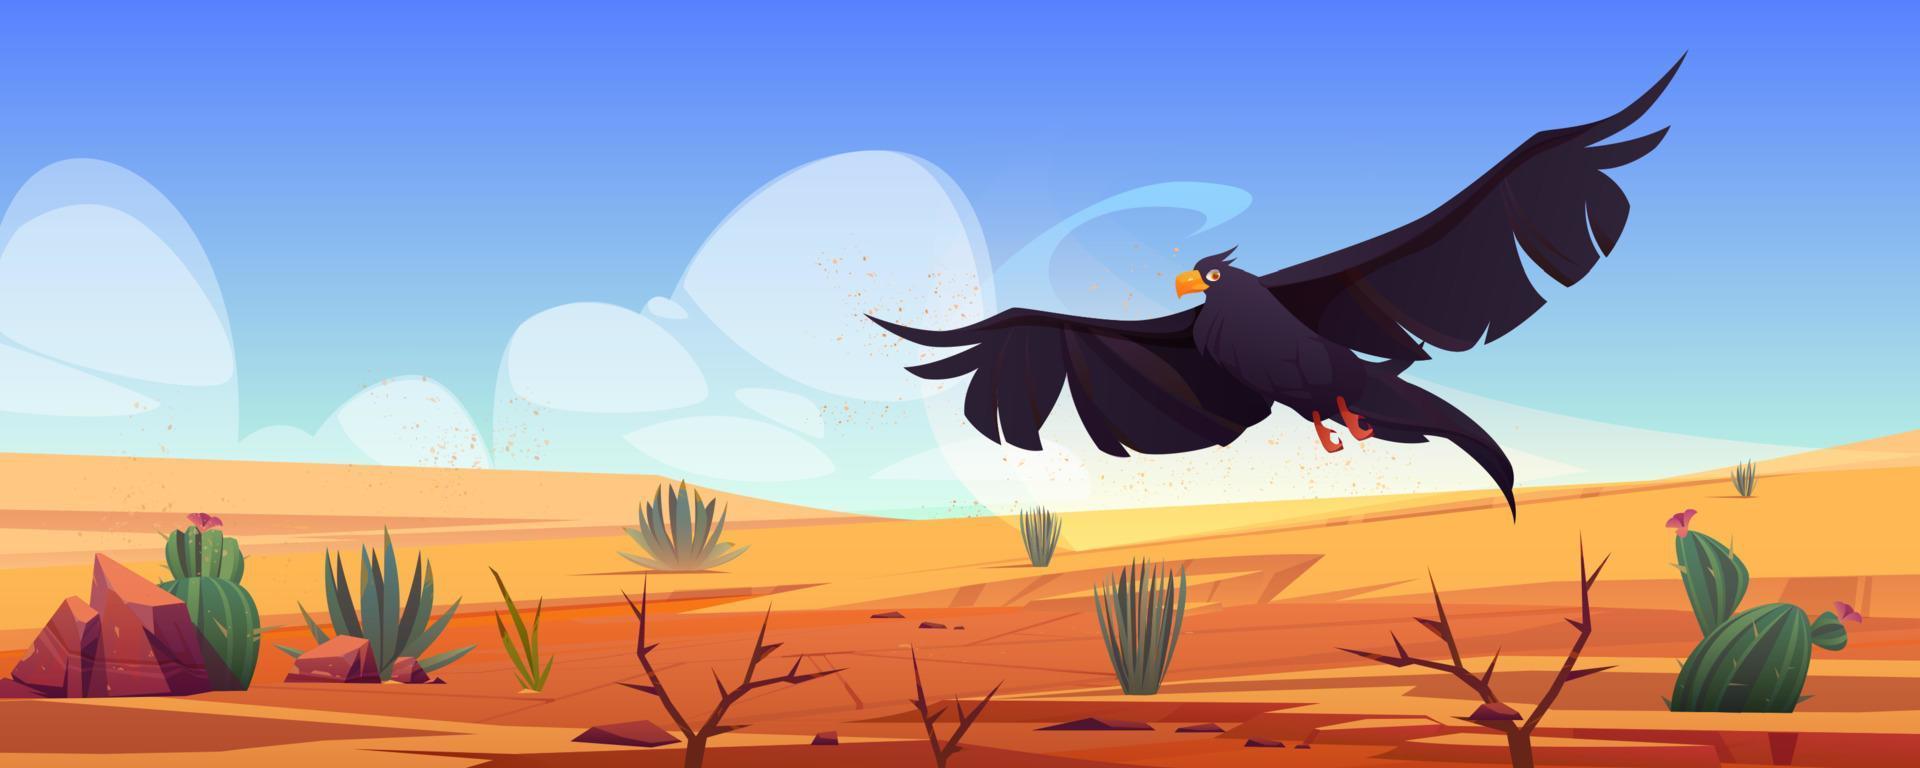 águia negra sobre a paisagem do deserto, falcão ou falcão vetor